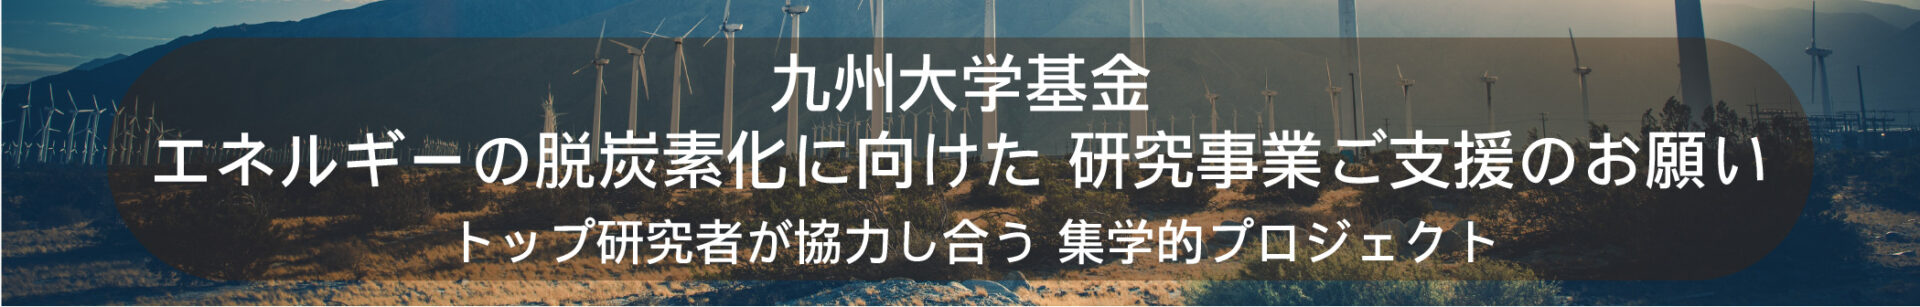 九州大学基金エネルギーの脱炭素化に向けた 研究事業ご支援のお願い